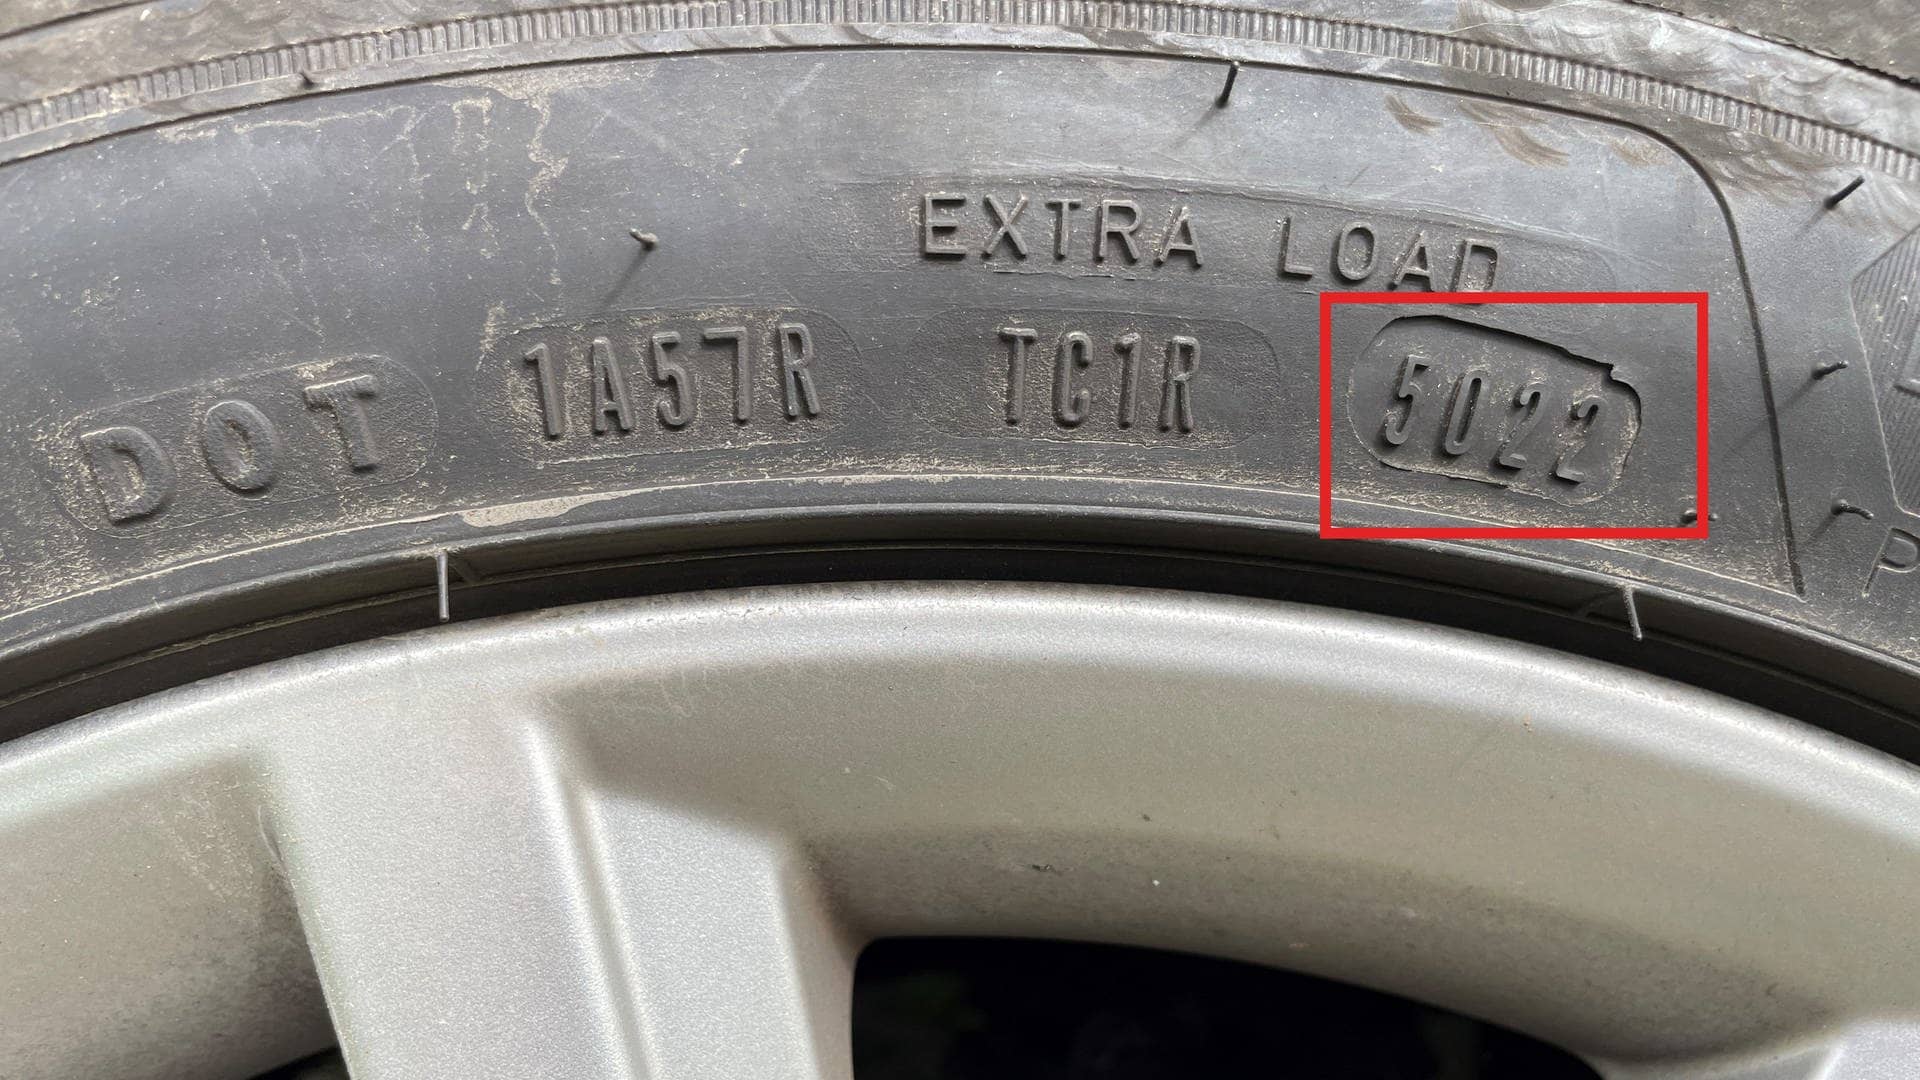 Neue Sommerreifen online kaufen? Hier lohnt es sich das Alter der Reifen zu checken.  Wie alt der Reifen ist, verrät die DOT Nummer: Die ersten beiden Zahlen geben die Kalenderwoche, die nächsten beiden das Jahr der Herstellung an. Dieser Reifen wurde in der KW 50 im Jahr 2022 hergestellt. 